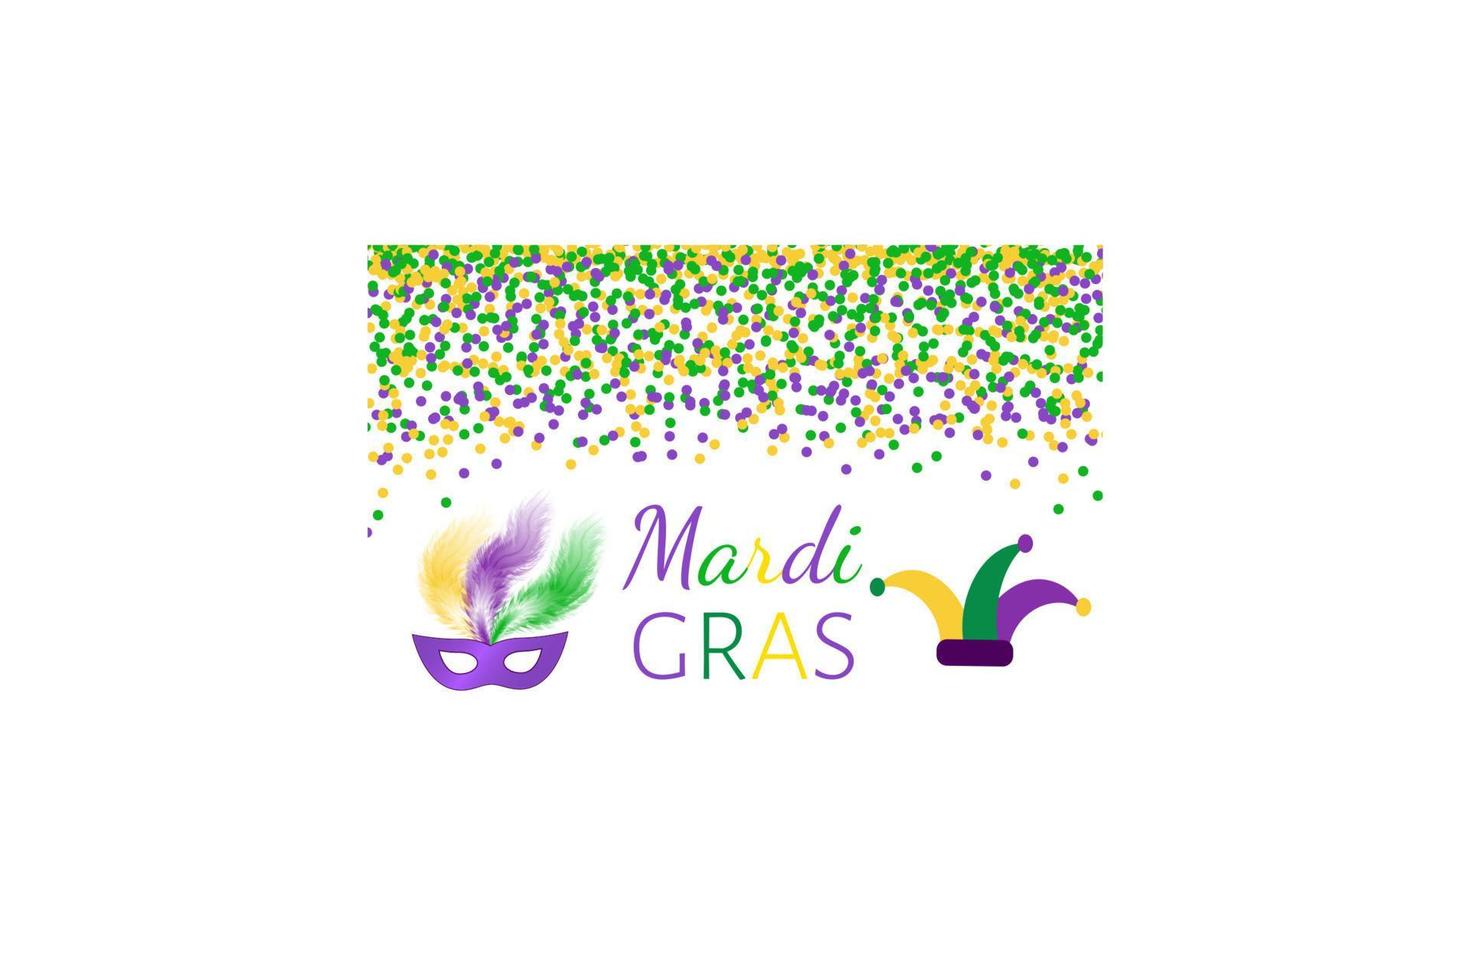 mardi gras karneval vektor bakgrund med grön, lila och gul konfetti. lätt att redigera designmall för dina projekt.